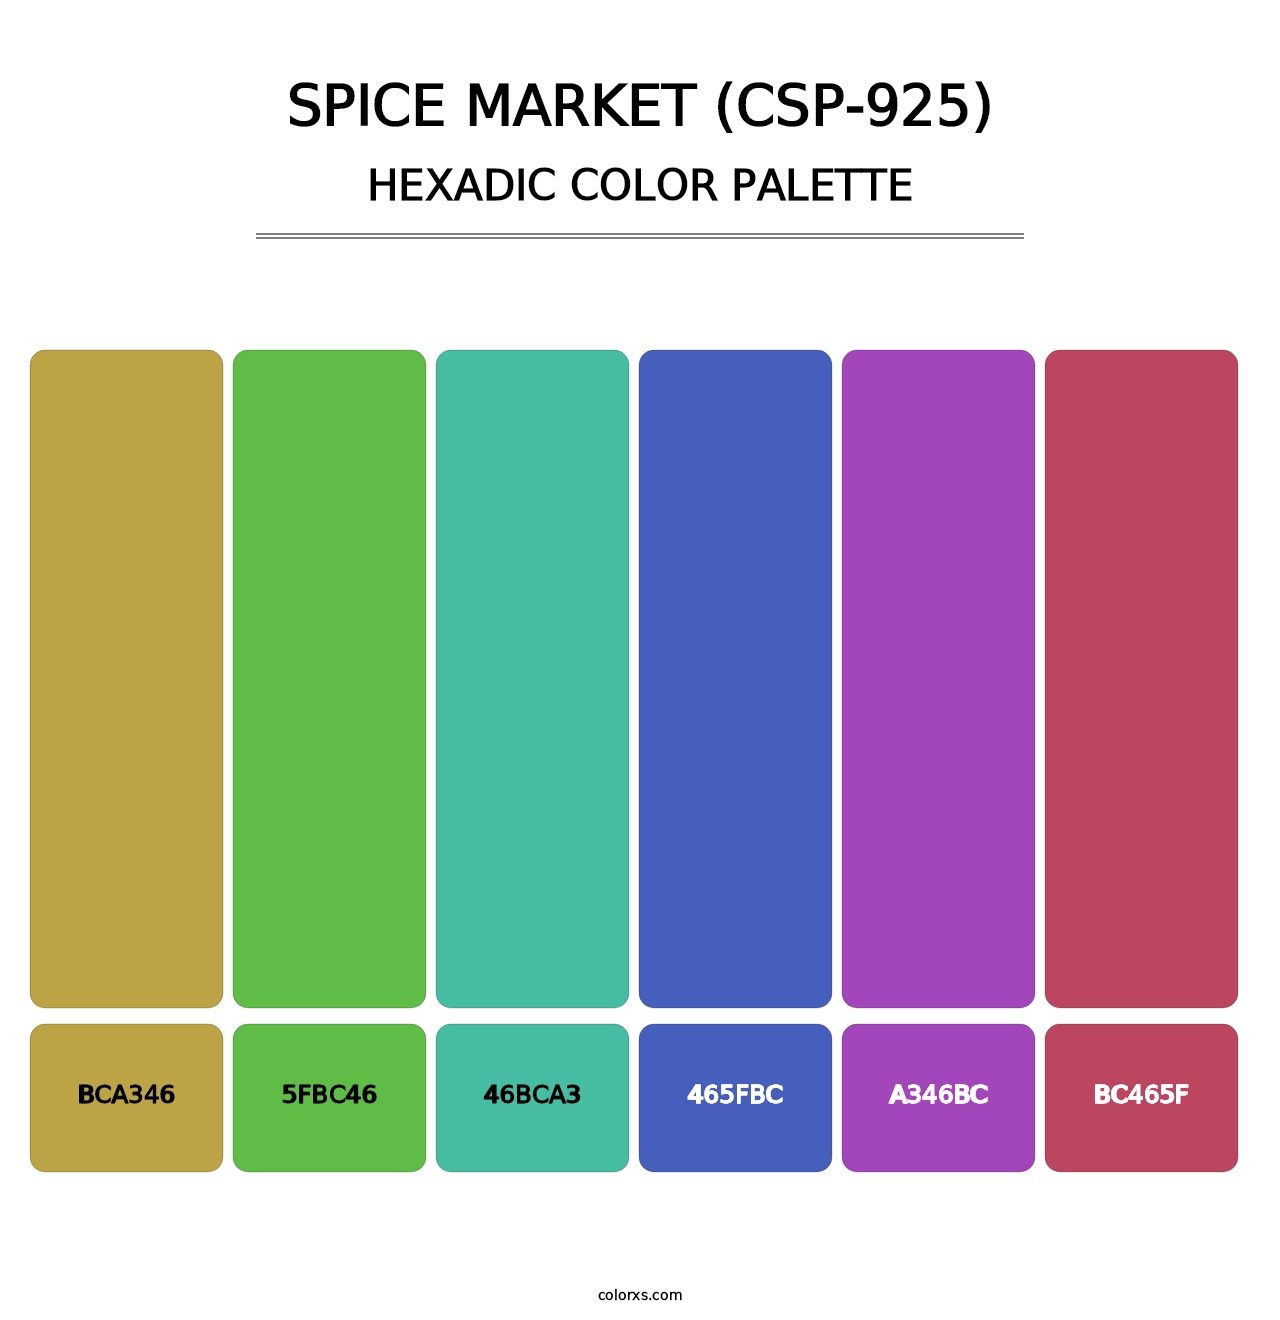 Spice Market (CSP-925) - Hexadic Color Palette